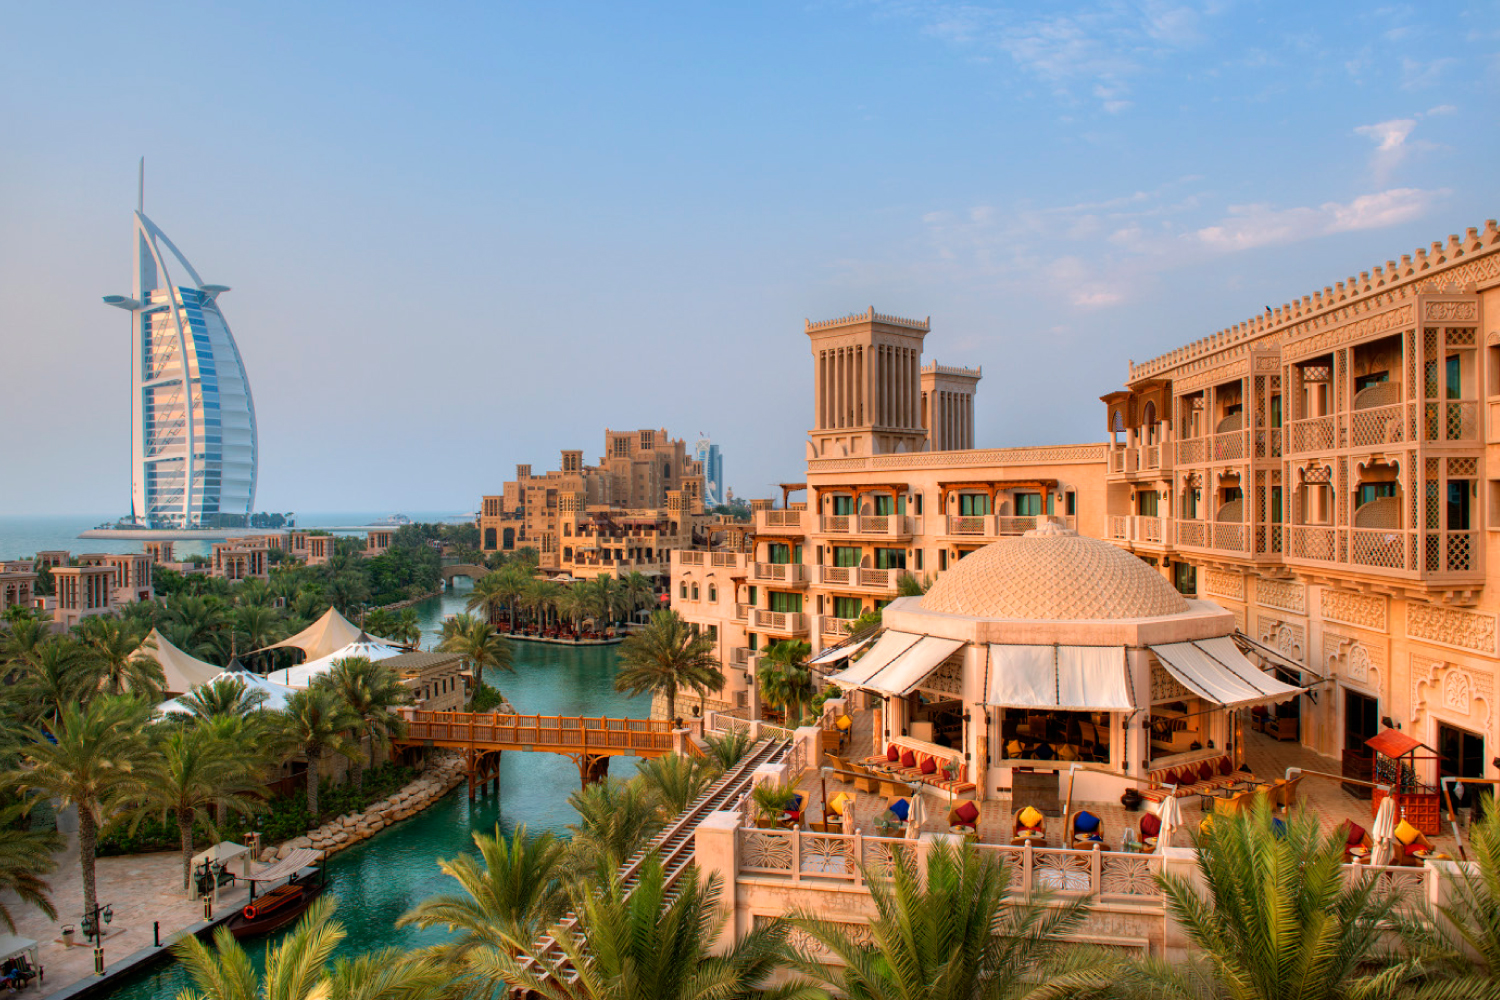 Jumeirah Al Qasr Hotels Time Out Abu Dhabi